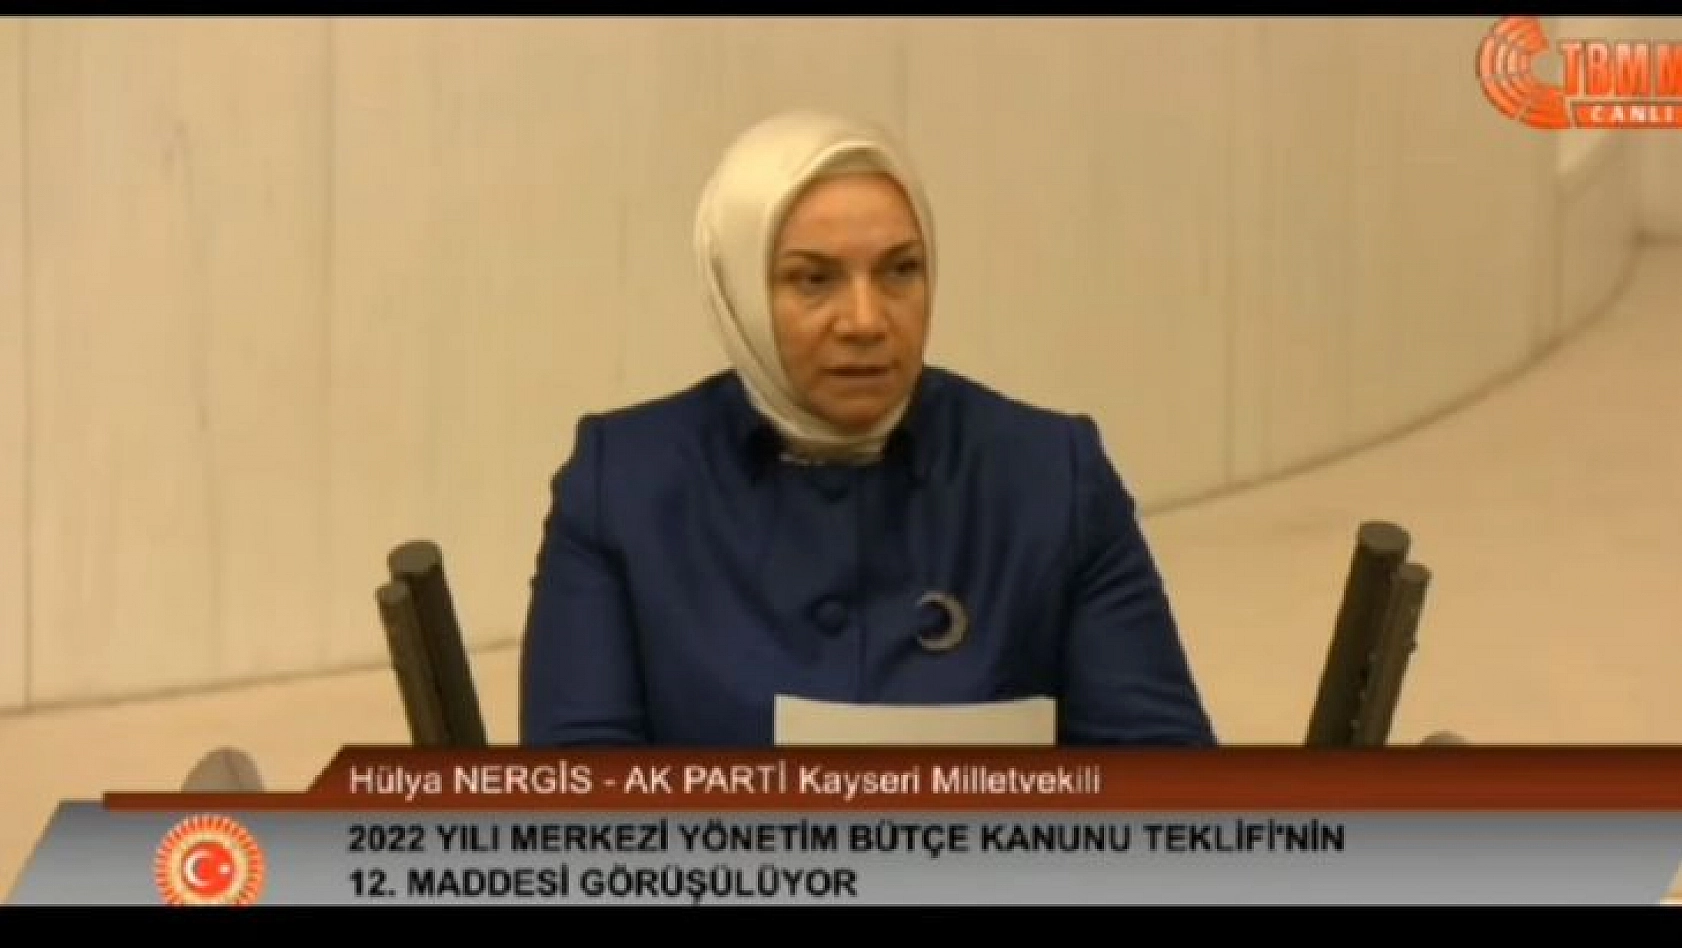 AK Parti Milletvekili Nergis: Halkımız bize güvendi, destekledi, bu güvene layık olmaya çalıştık!